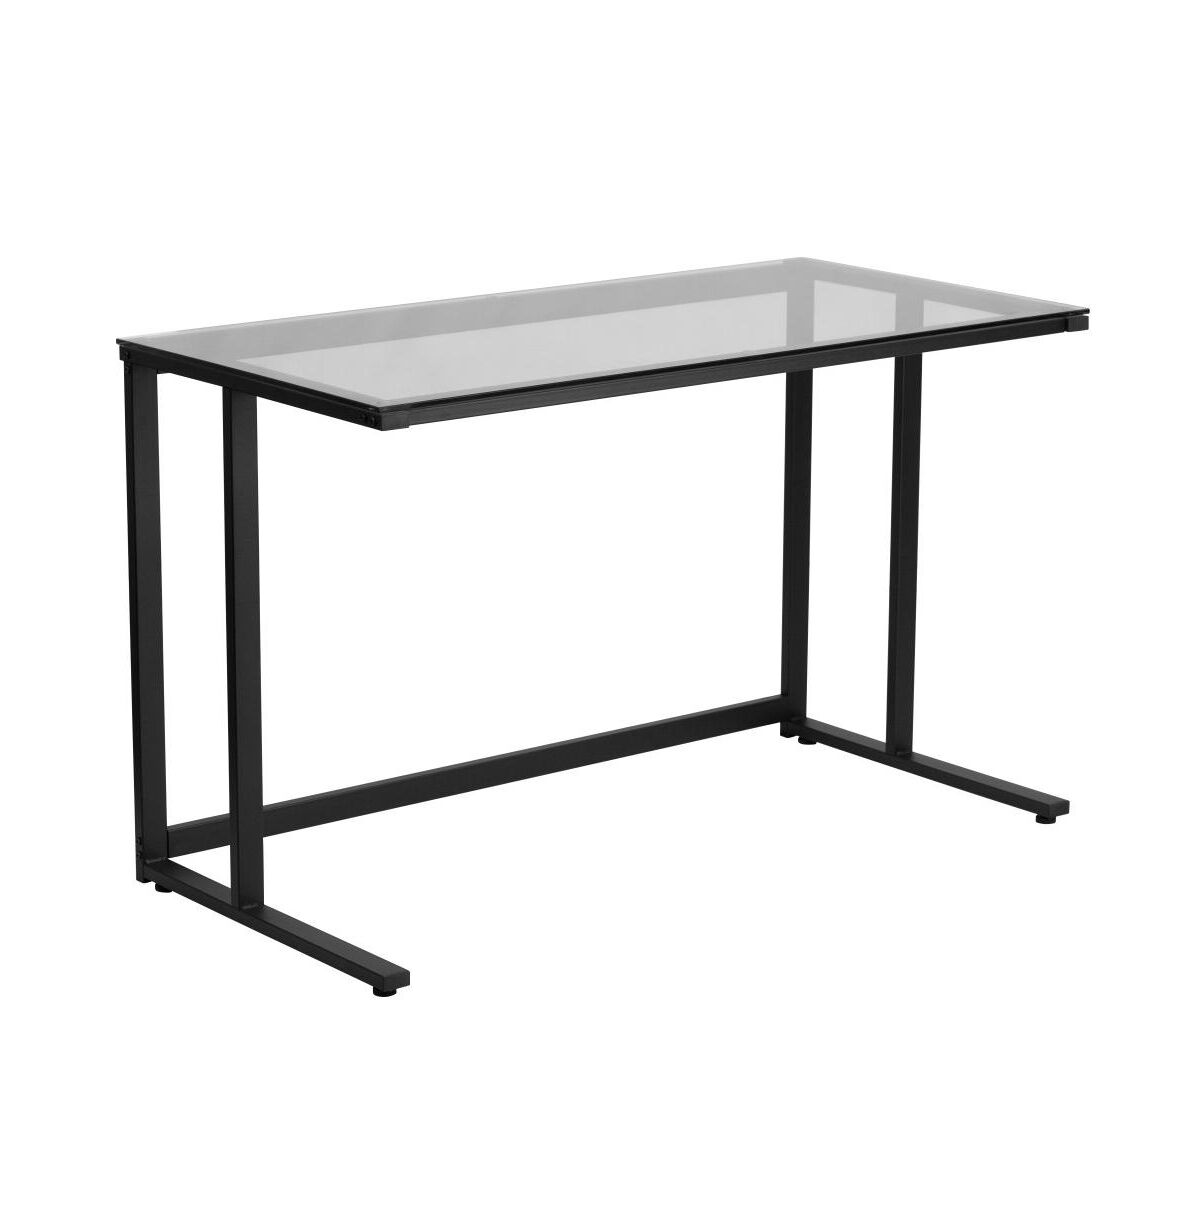 Emma+oliver Glass Top Desk With Pedestal Metal Frame - Home Office Furniture - Clear/black